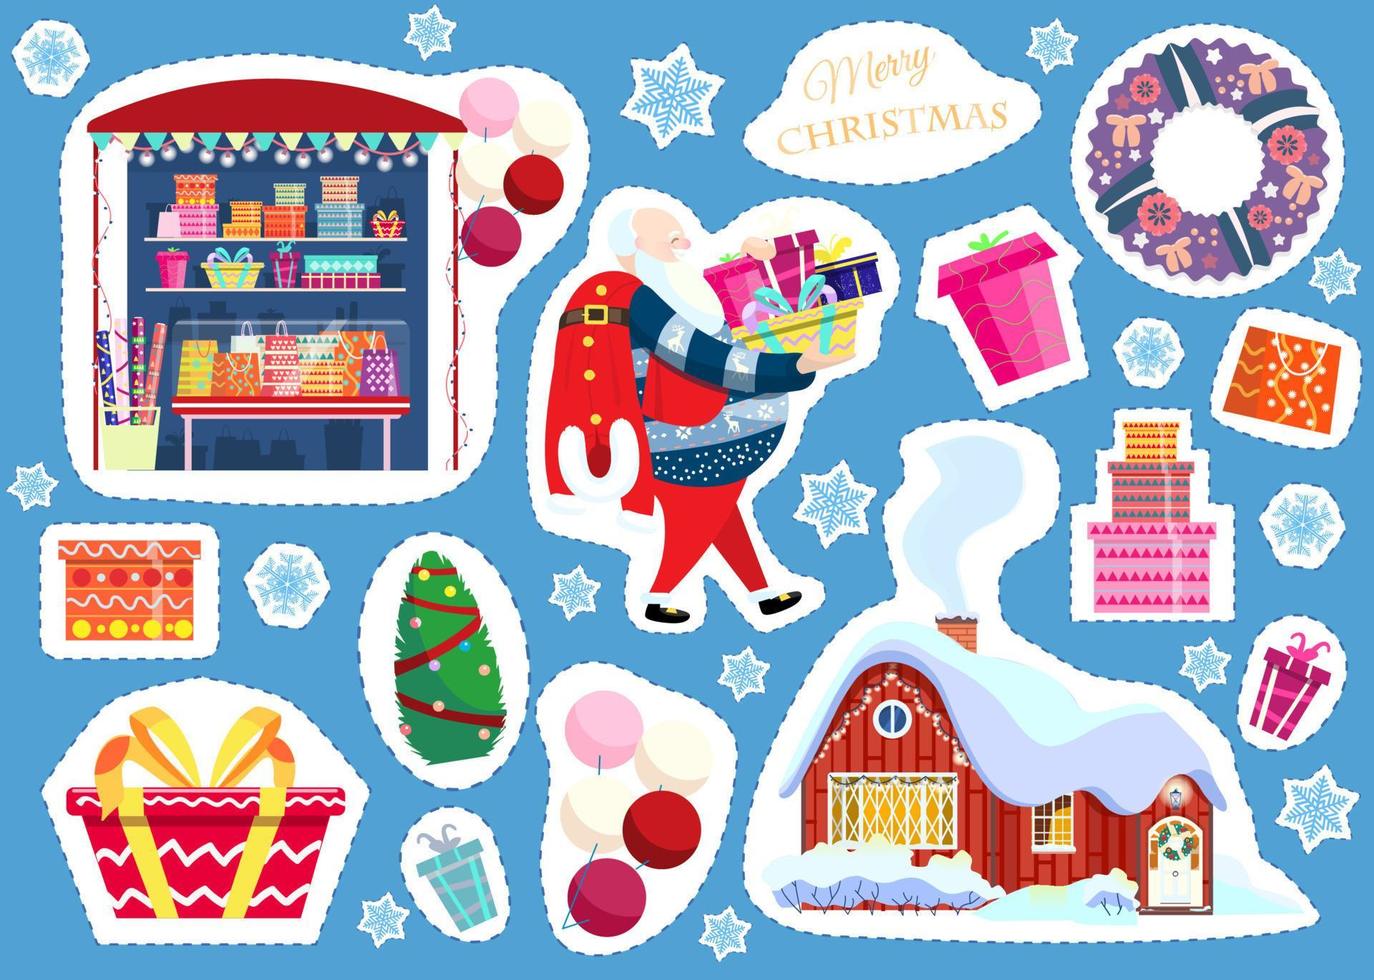 Vektor-Set von Aufklebern zum Thema Weihnachten und Neujahr. geschenkeladen, weihnachtsmann mit geschenken, geschenkboxen, weihnachtsbaum, luftballons, winterlandhaus, weihnachtskranz, schneeflocken. vektor